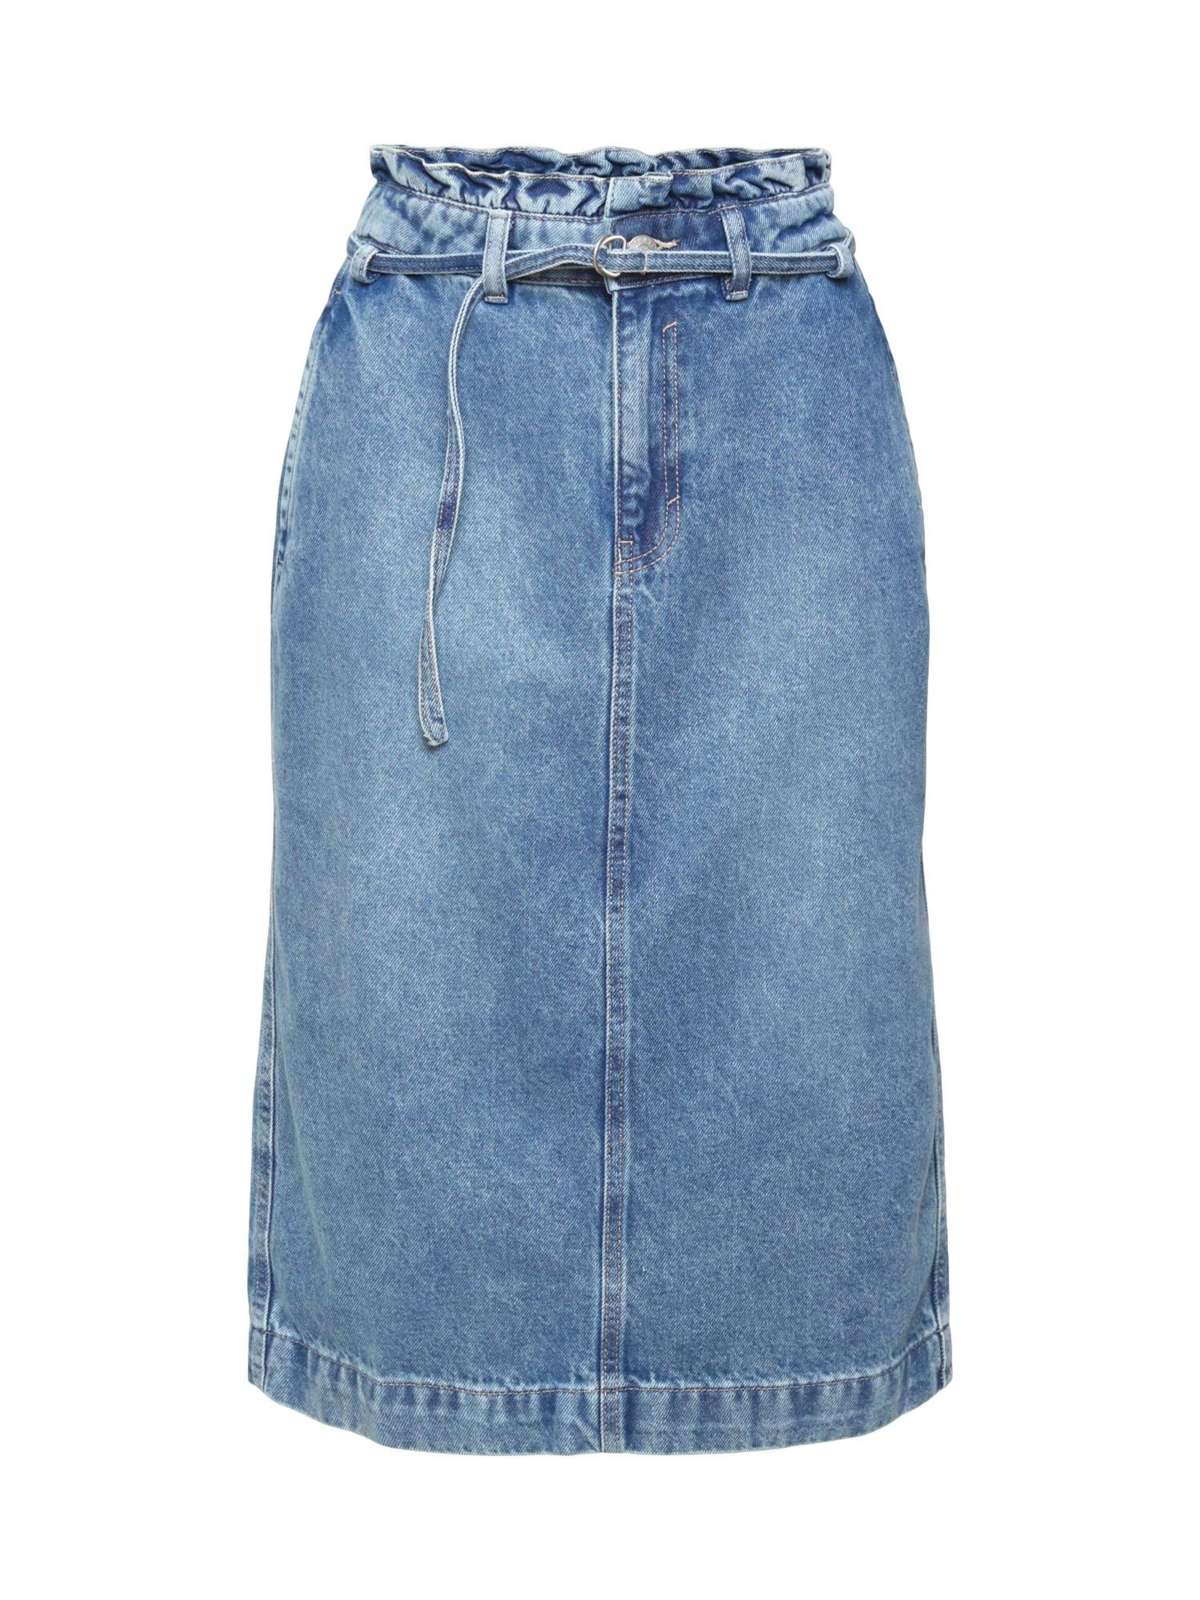 Джинсовая юбка Джинсовая юбка с поясом из бумажного пакета